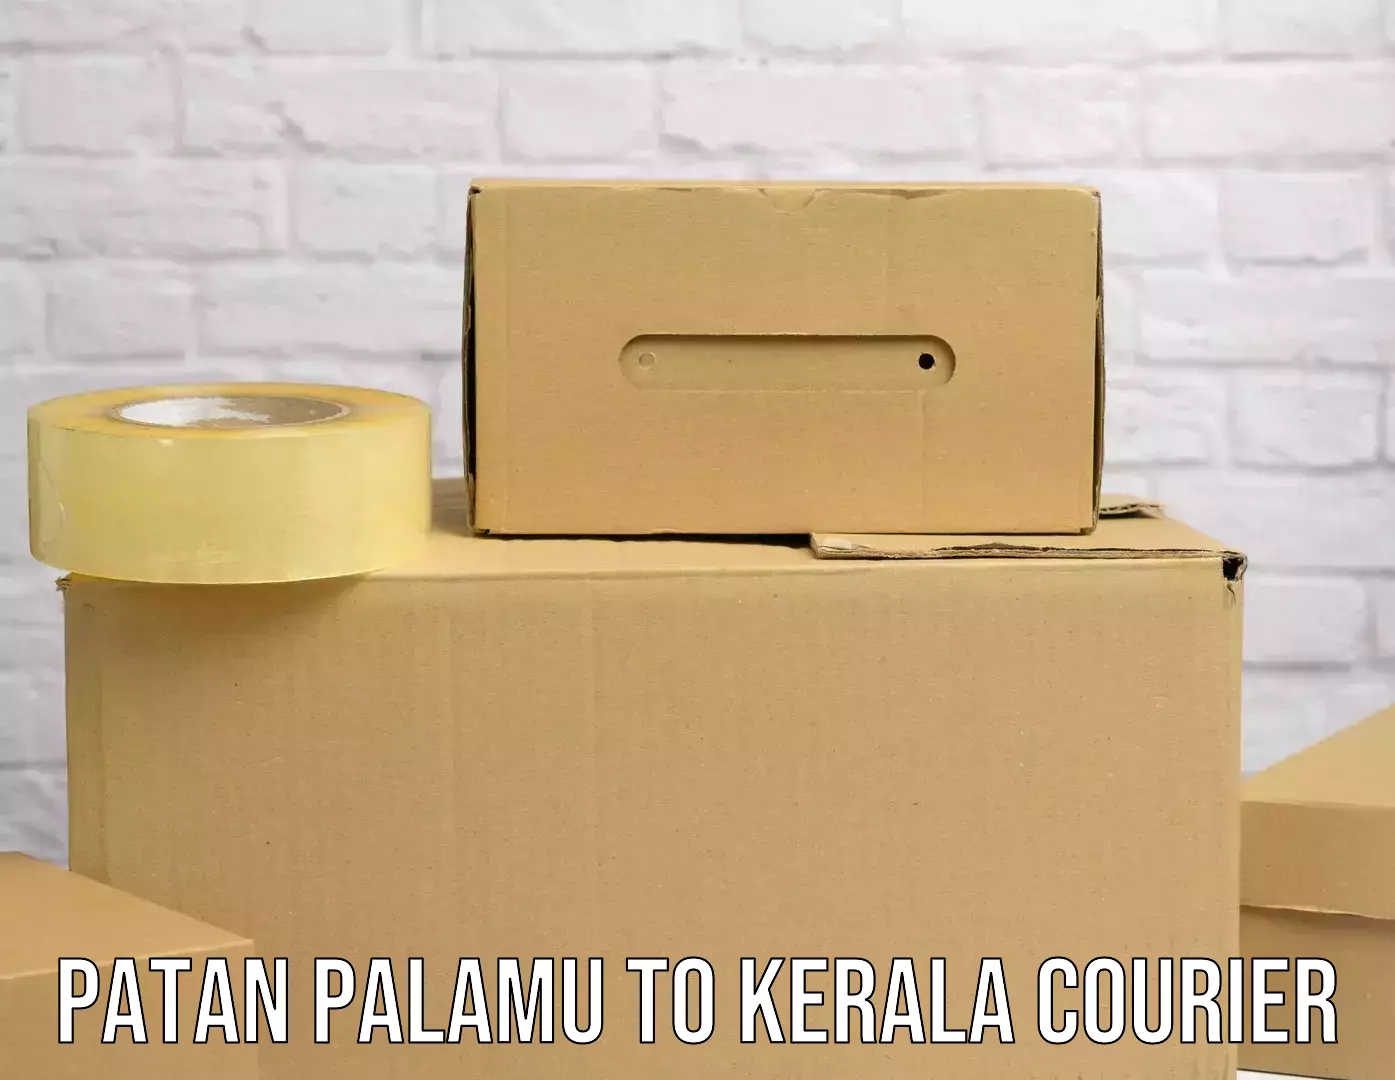 Express courier capabilities Patan Palamu to Vaikom